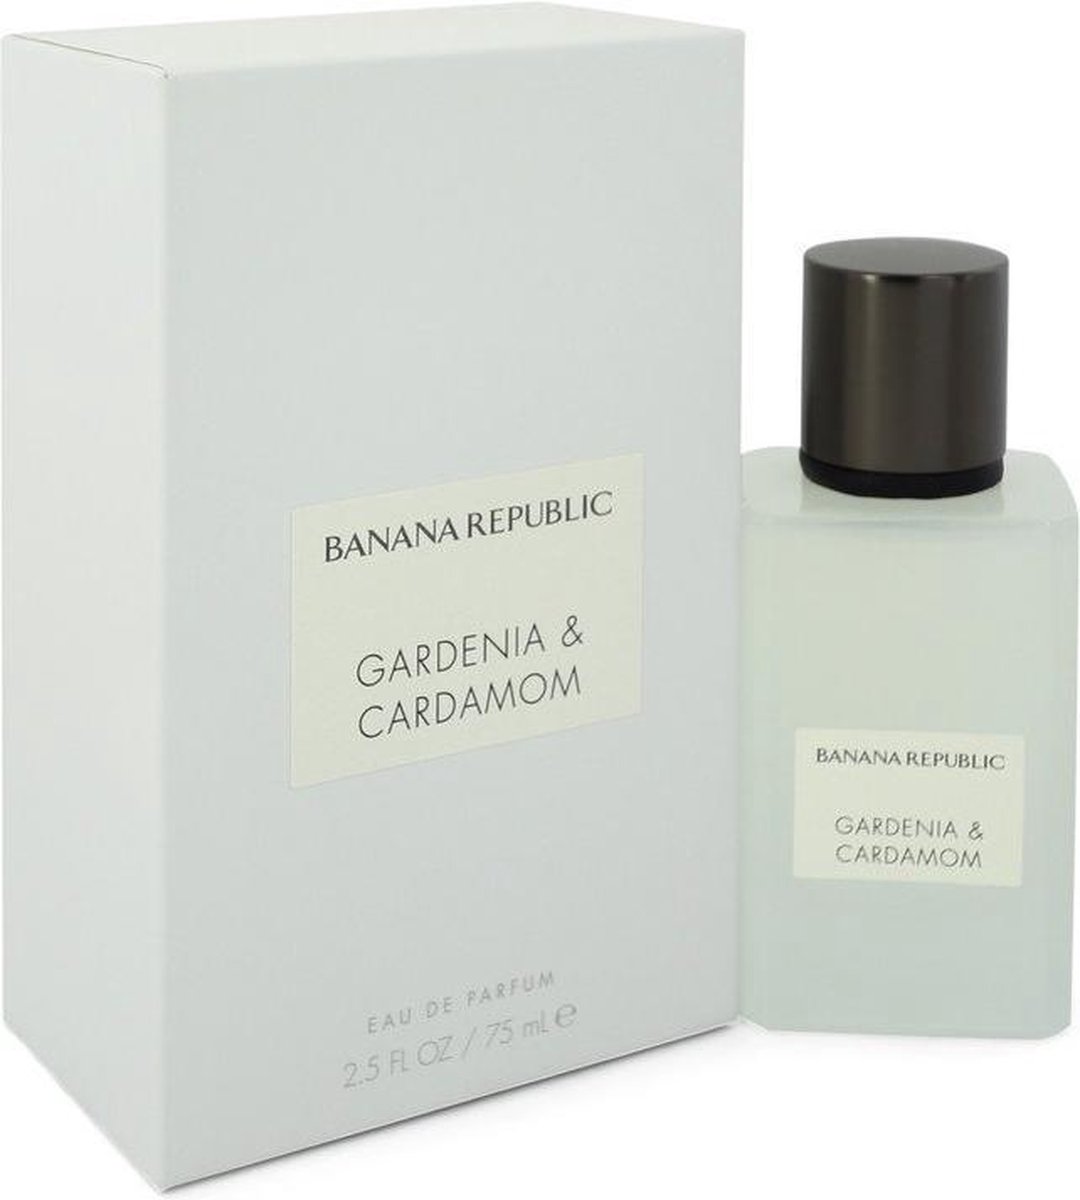 Banana Republic - Gardenia & Cardamom - Eau De Parfum - 75ML